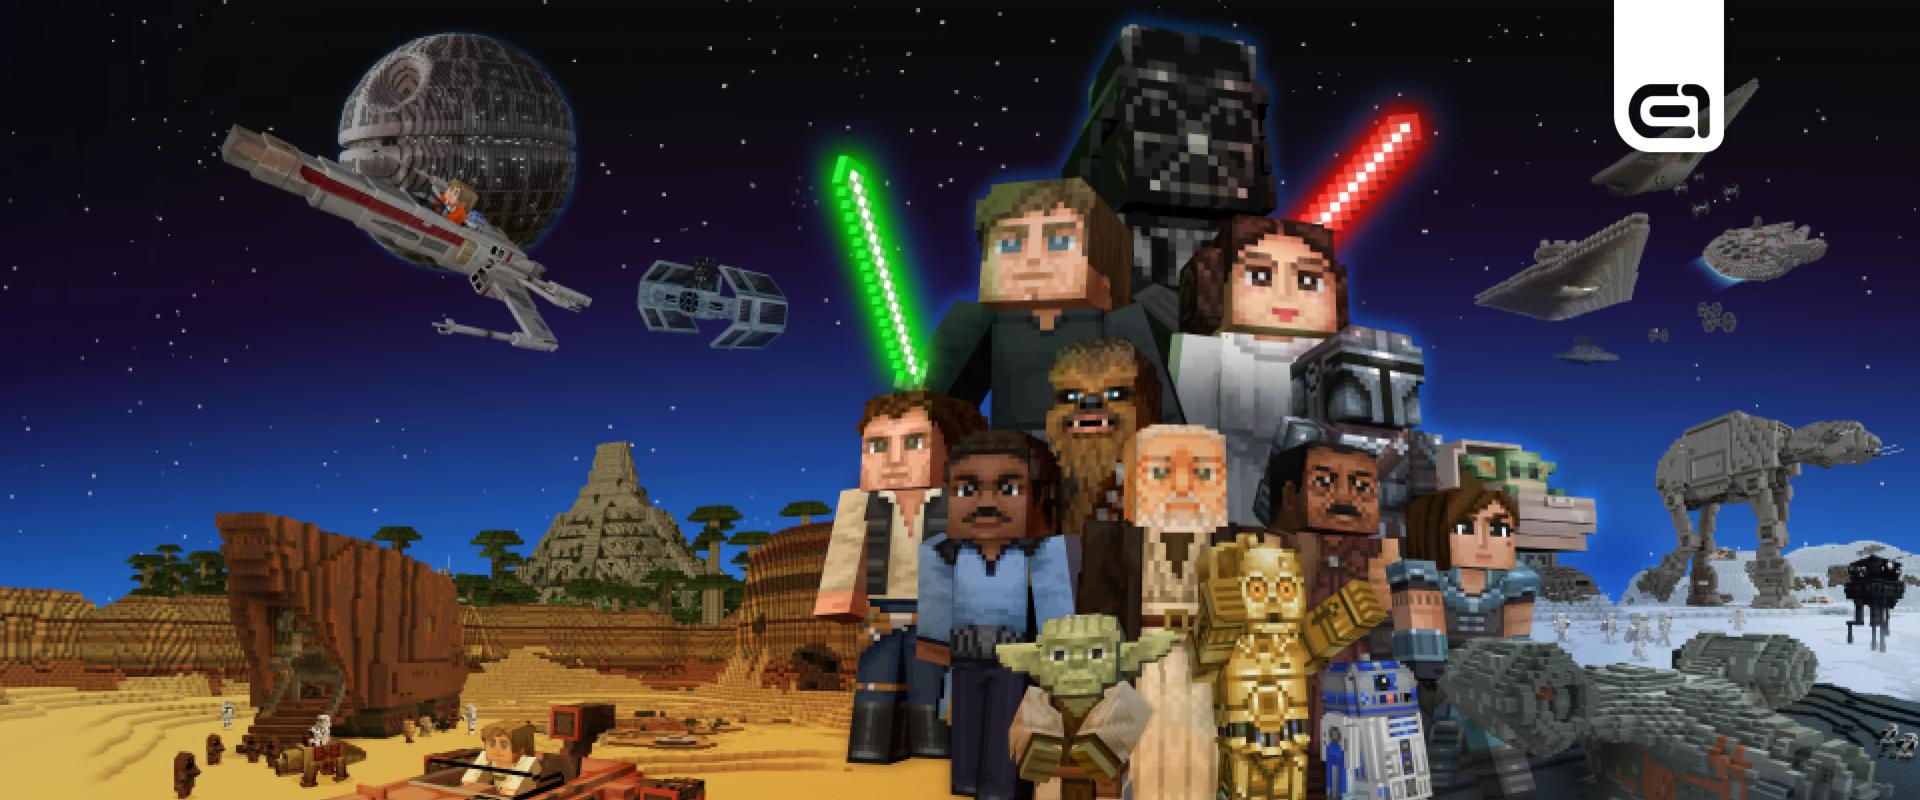 Egy lelkes Minecraft-játékos elkészítette a Star Wars egyik legikonikusabb jelenetét